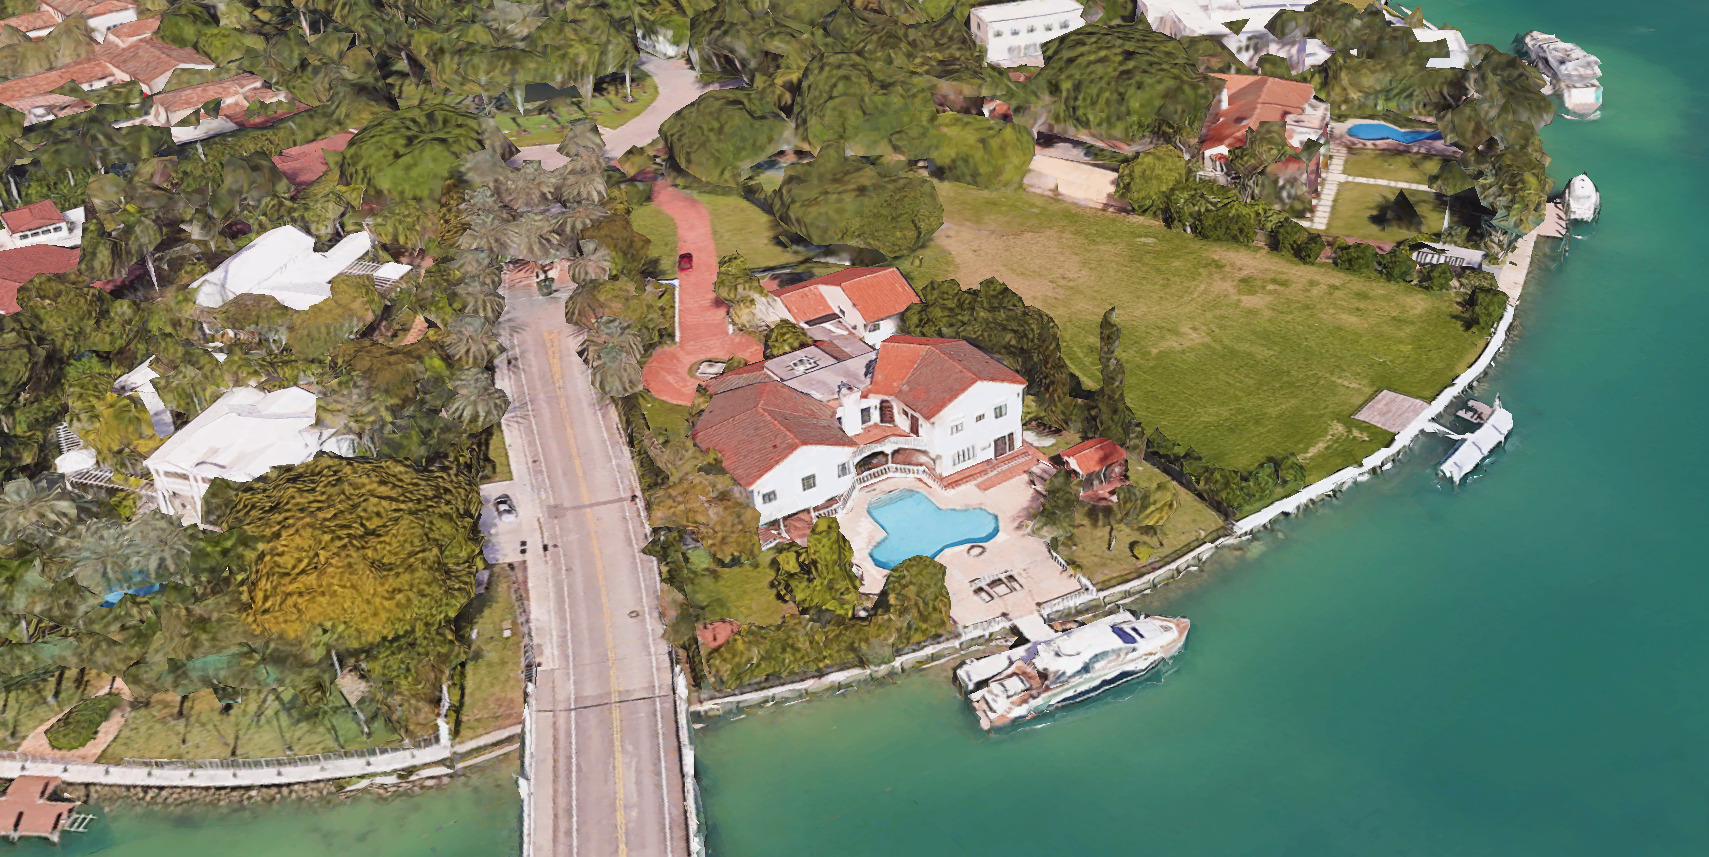 ‘Real Housewife’ Lea Black Seeking $37.5M for Star Island Home ...